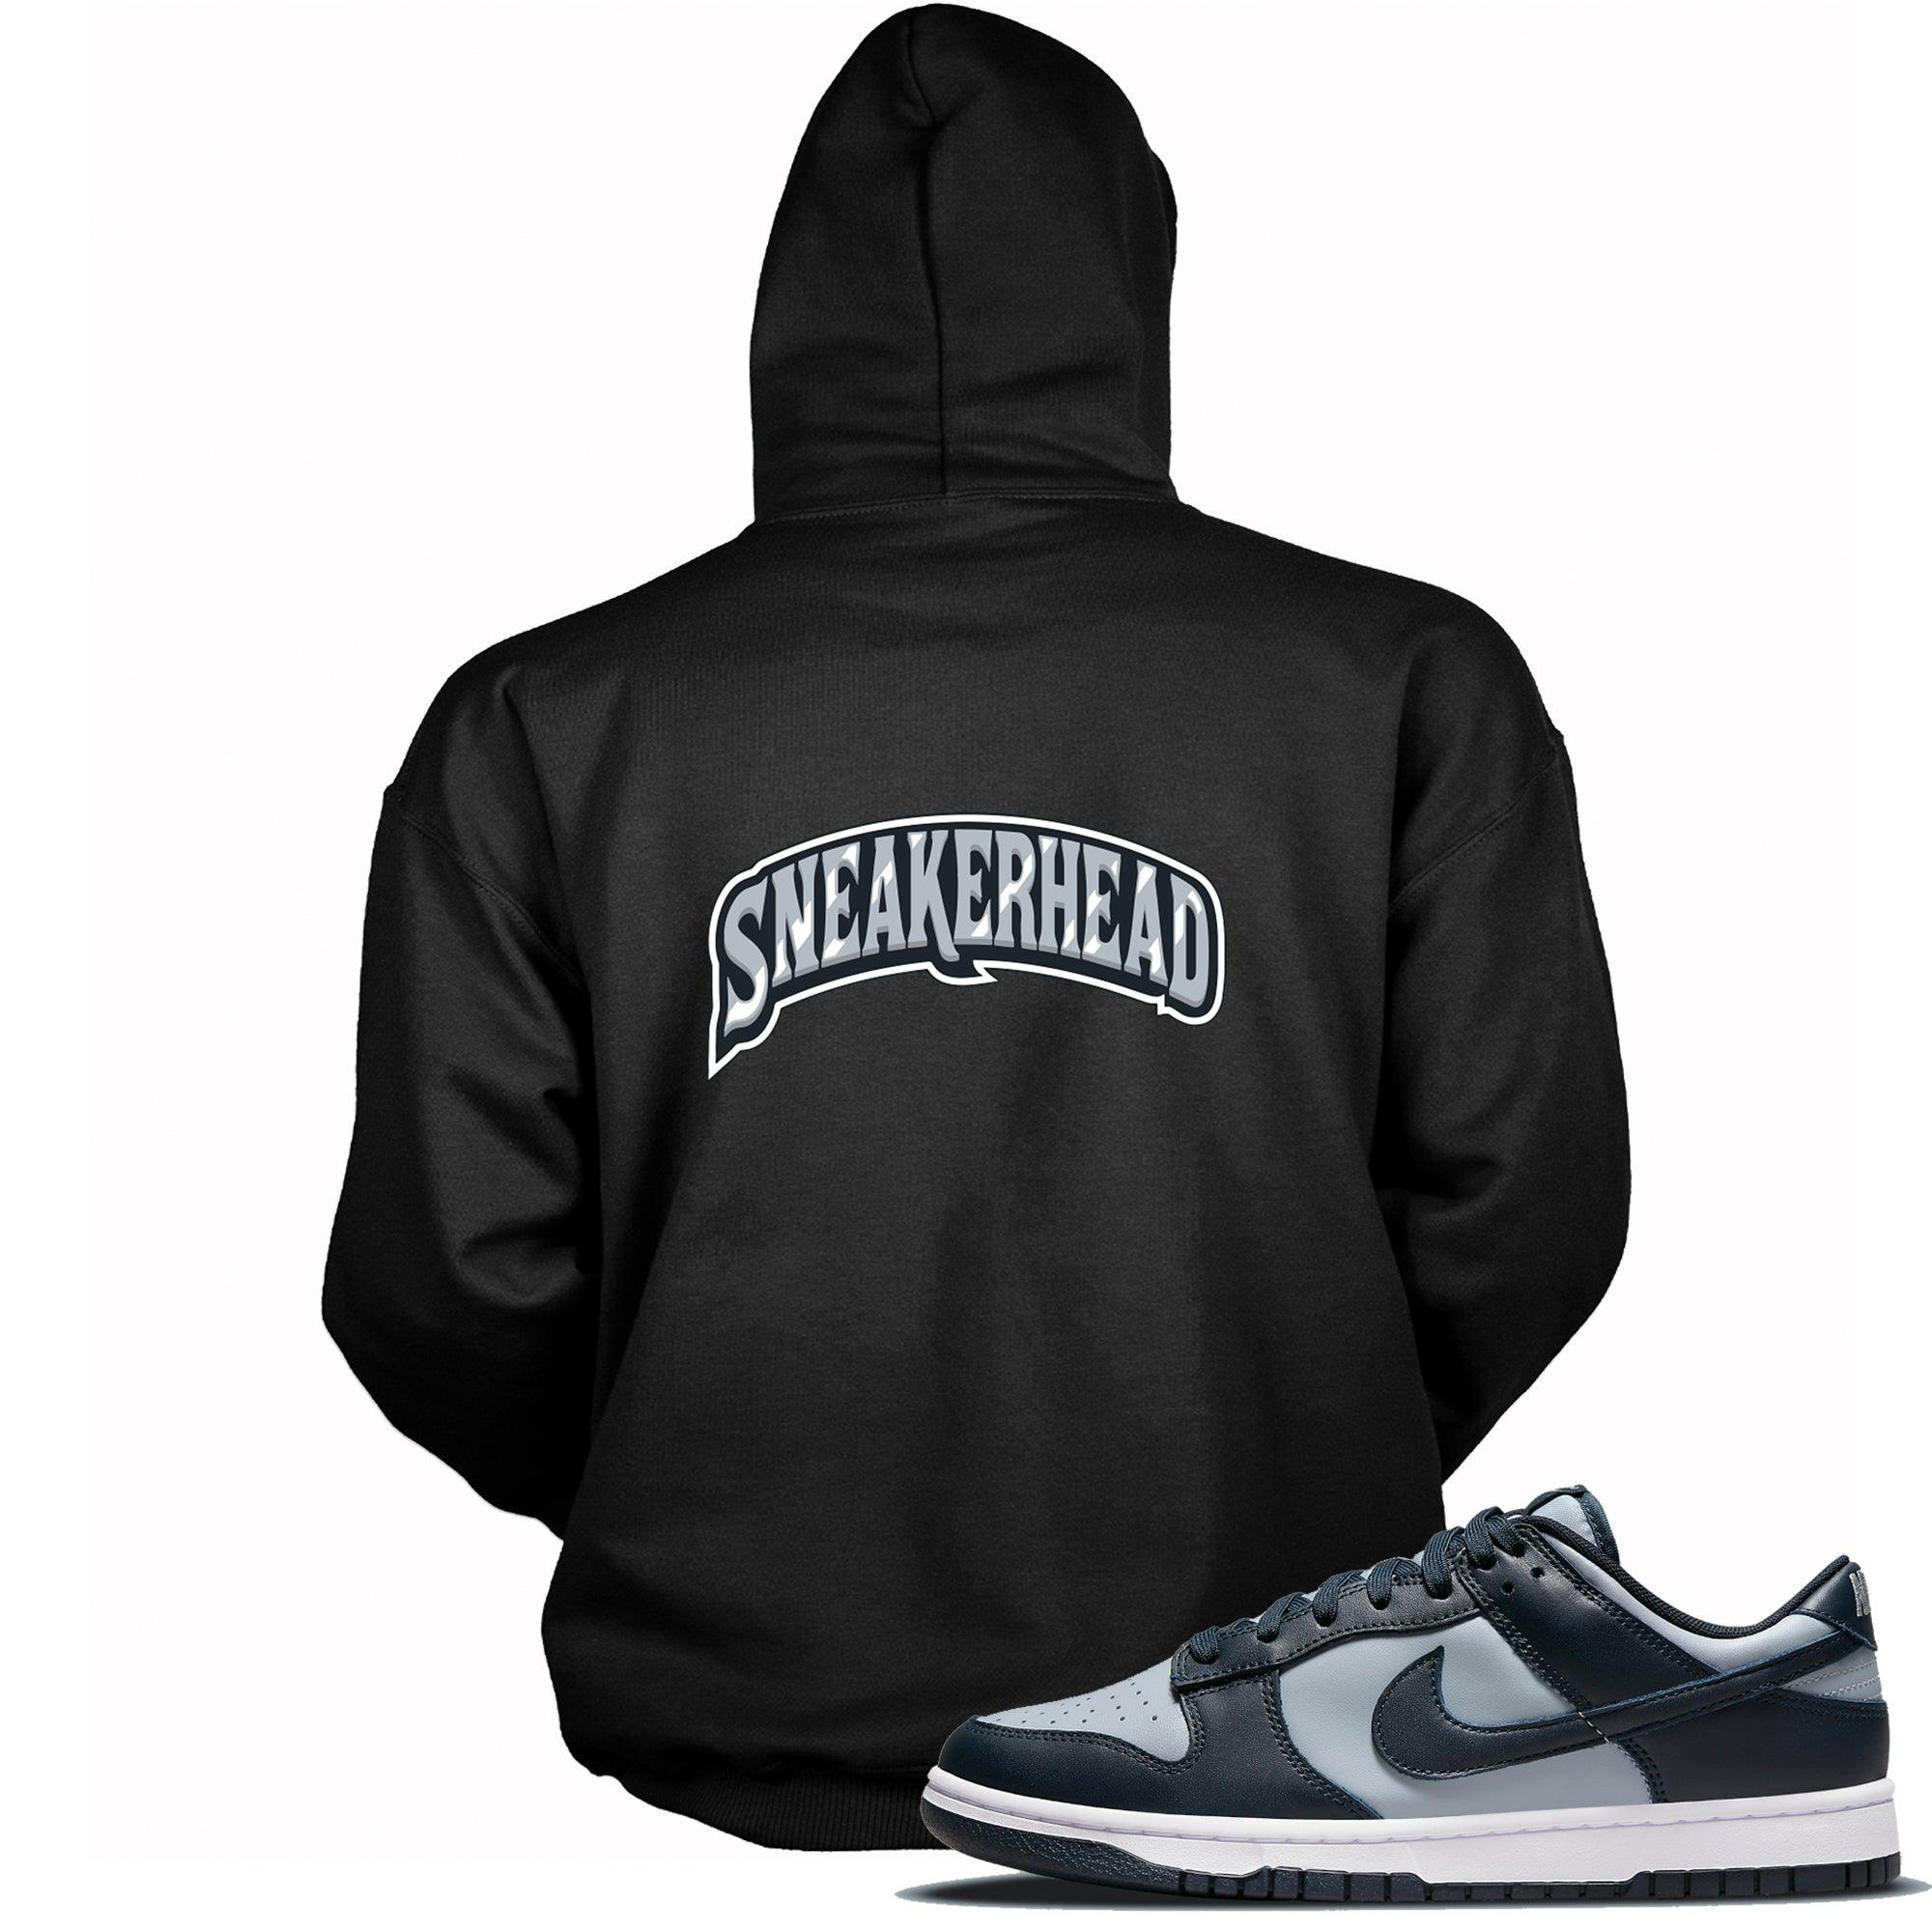 Sneakerhead Sweatshirt Nike Dunk Low Georgetown photo